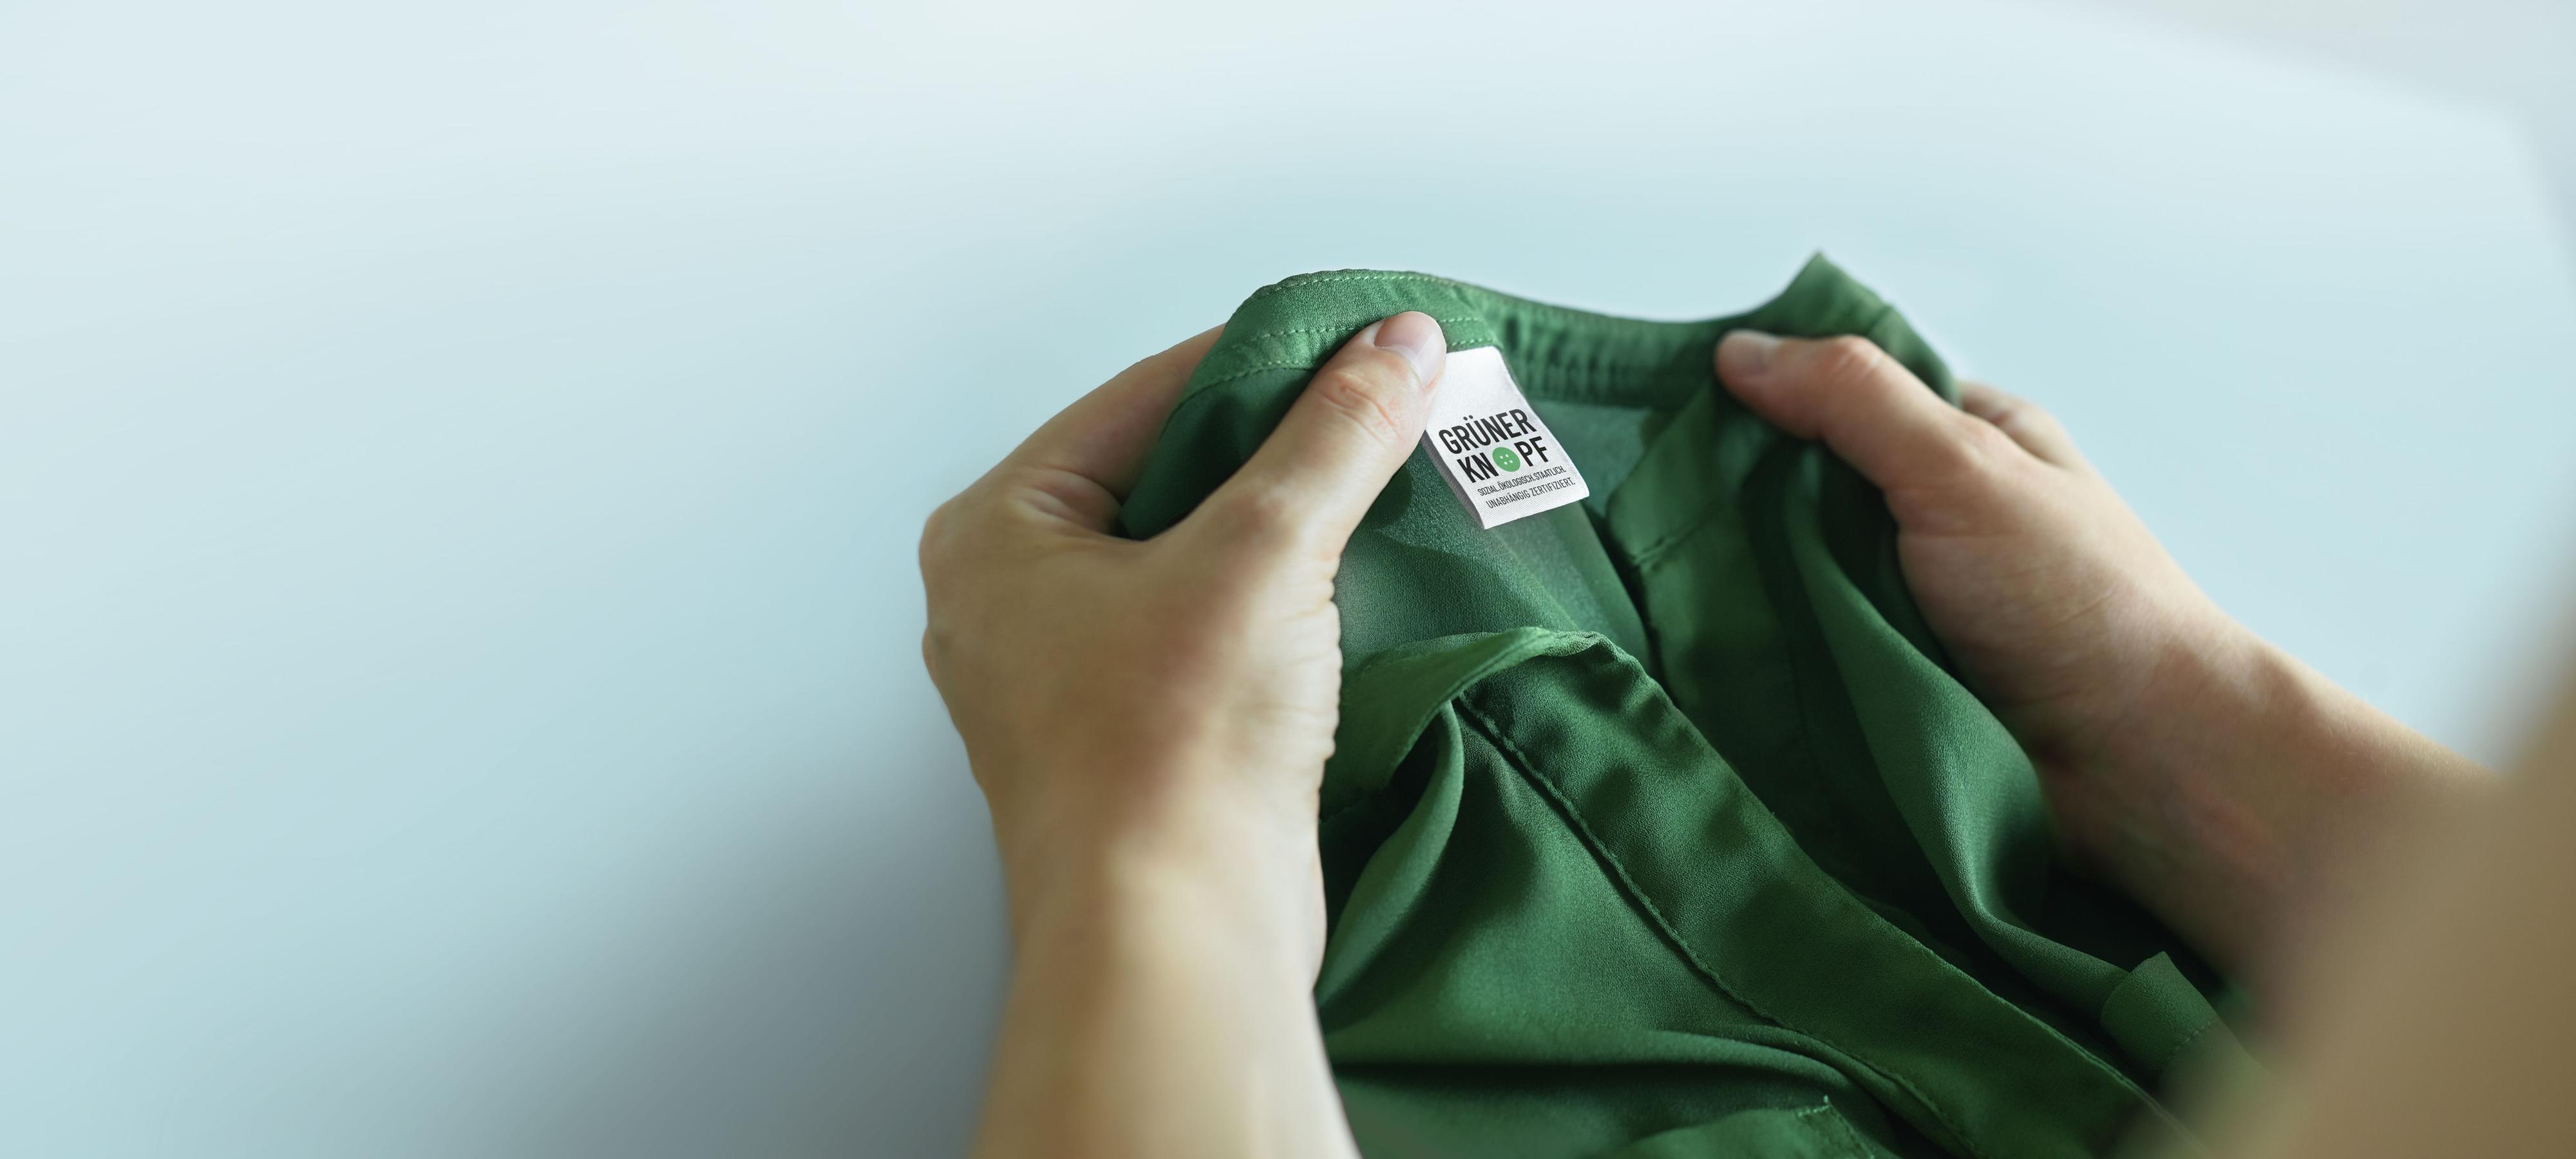 Der Grüne Knopf – das Siegel für sozial und ökologisch produzierte Textilien